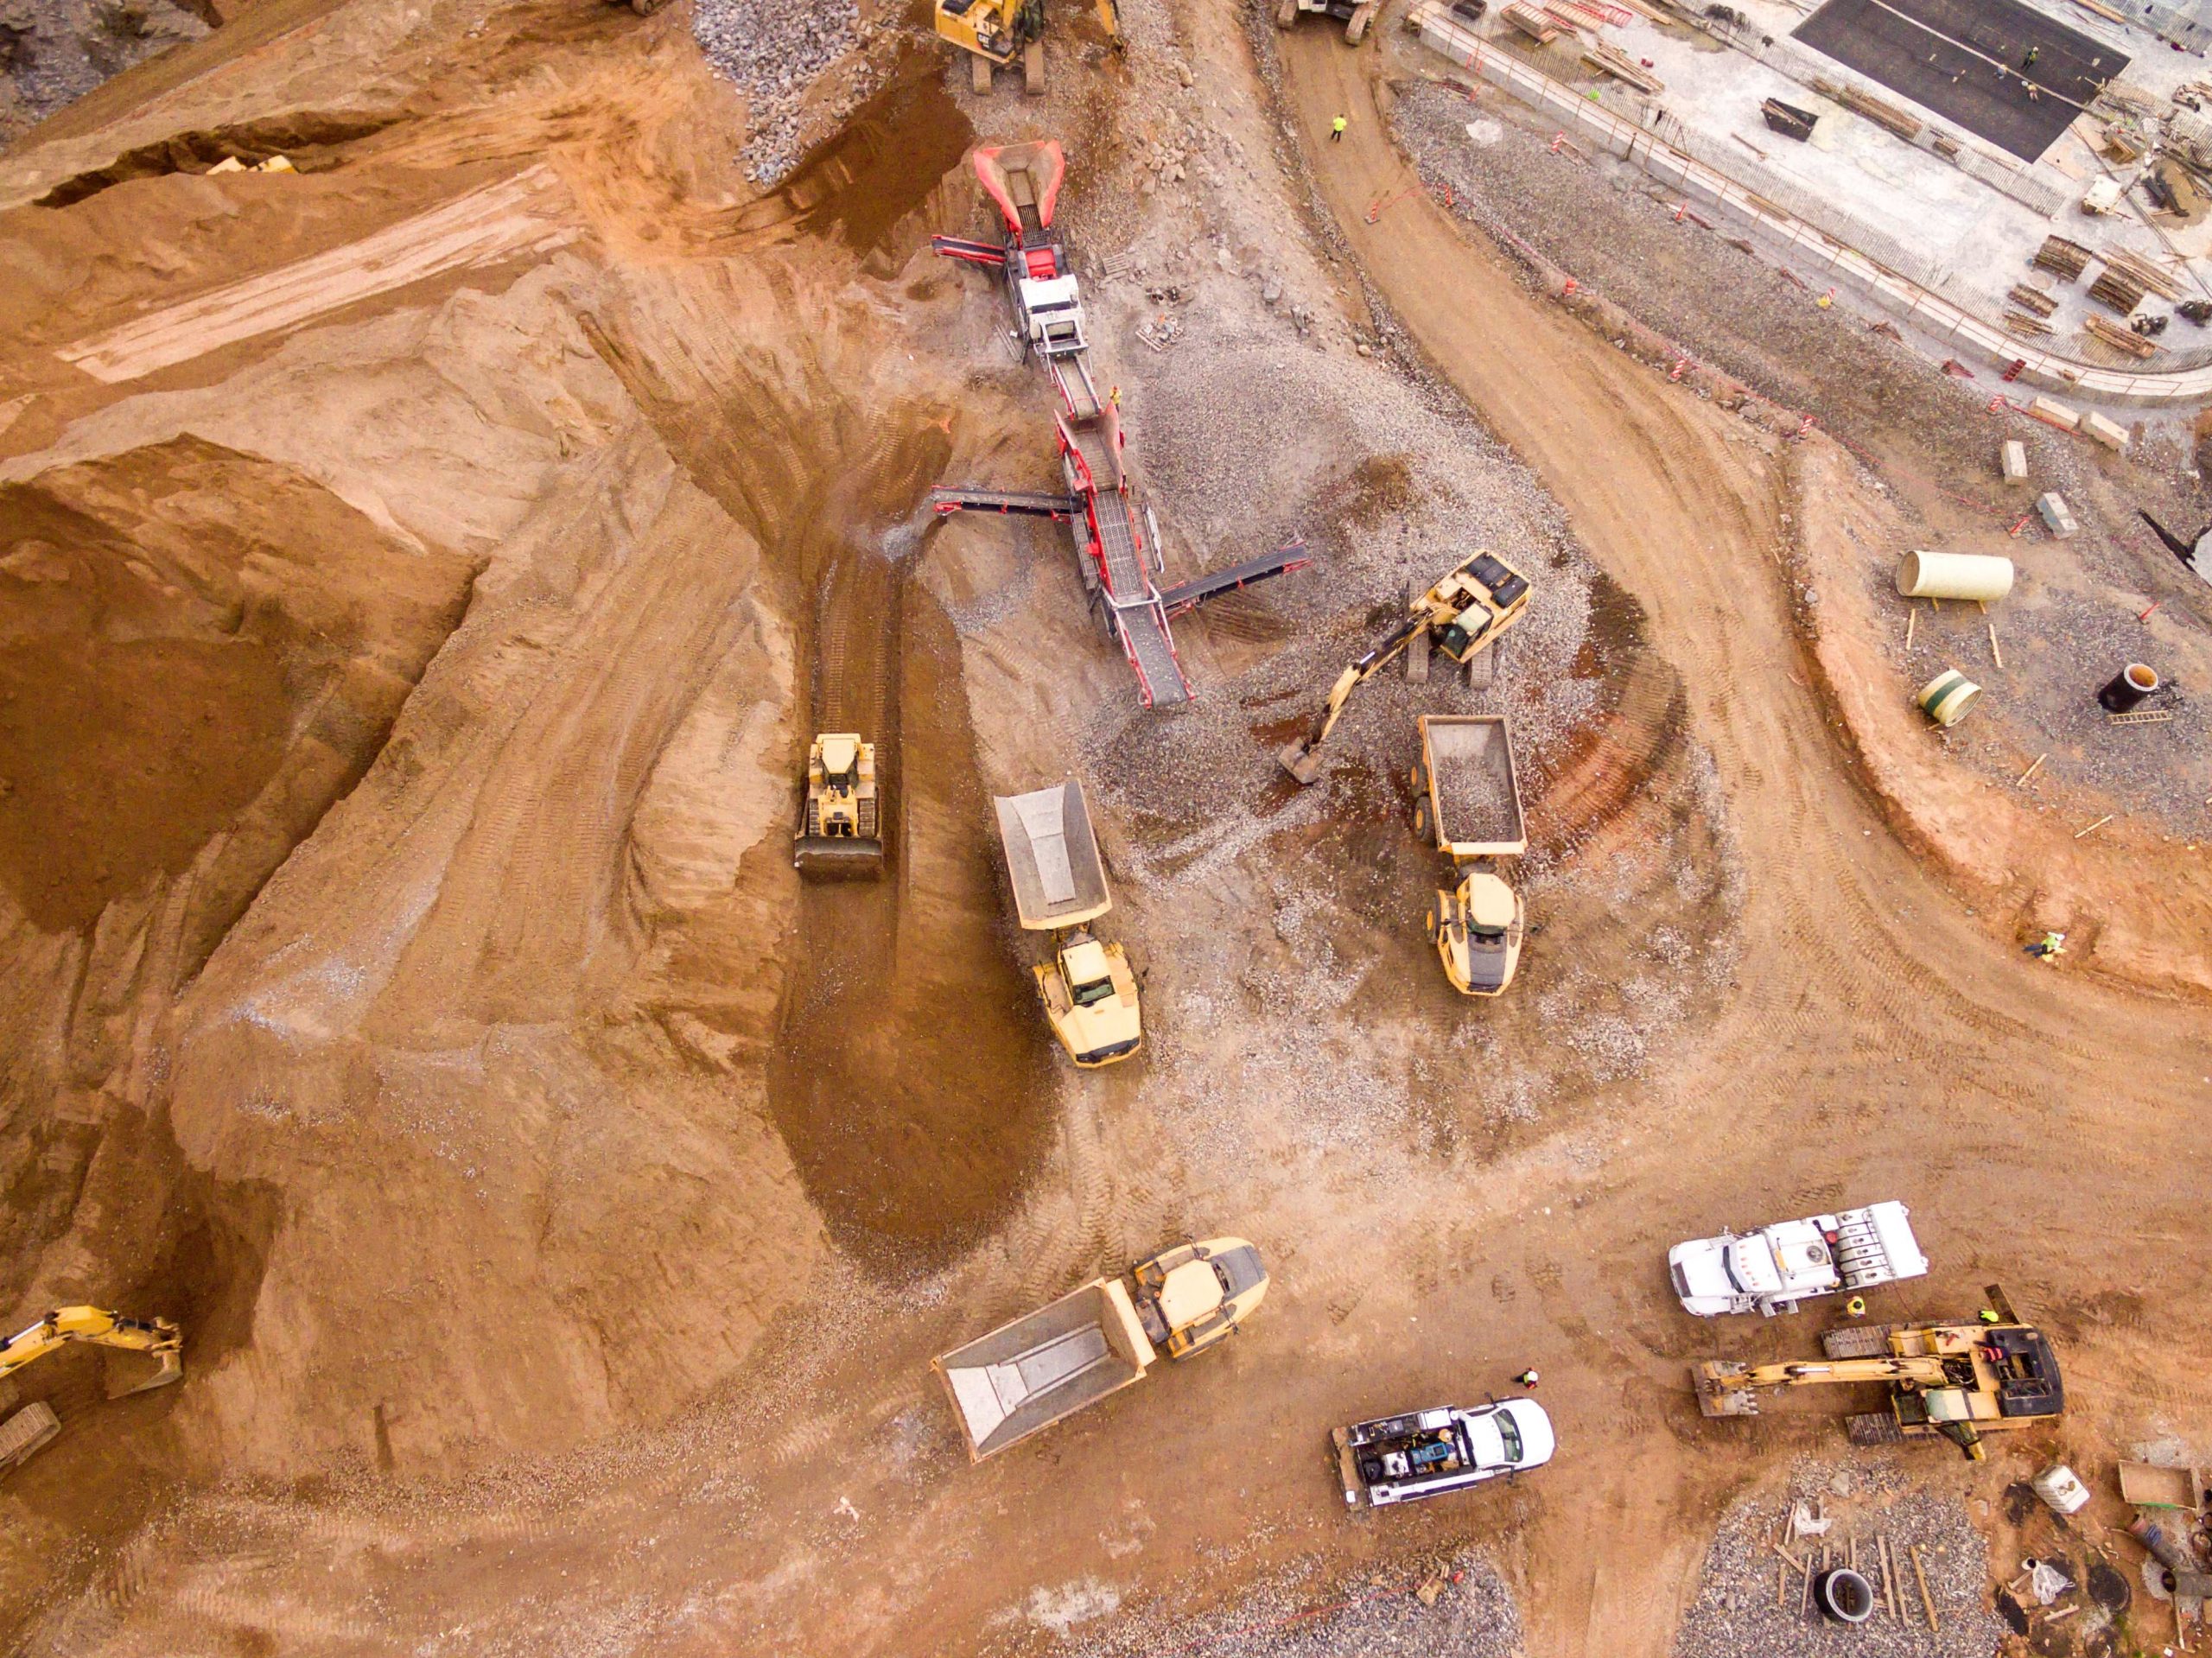 vue aérienne d'un chantier avec de nombreux engins qui travaillent